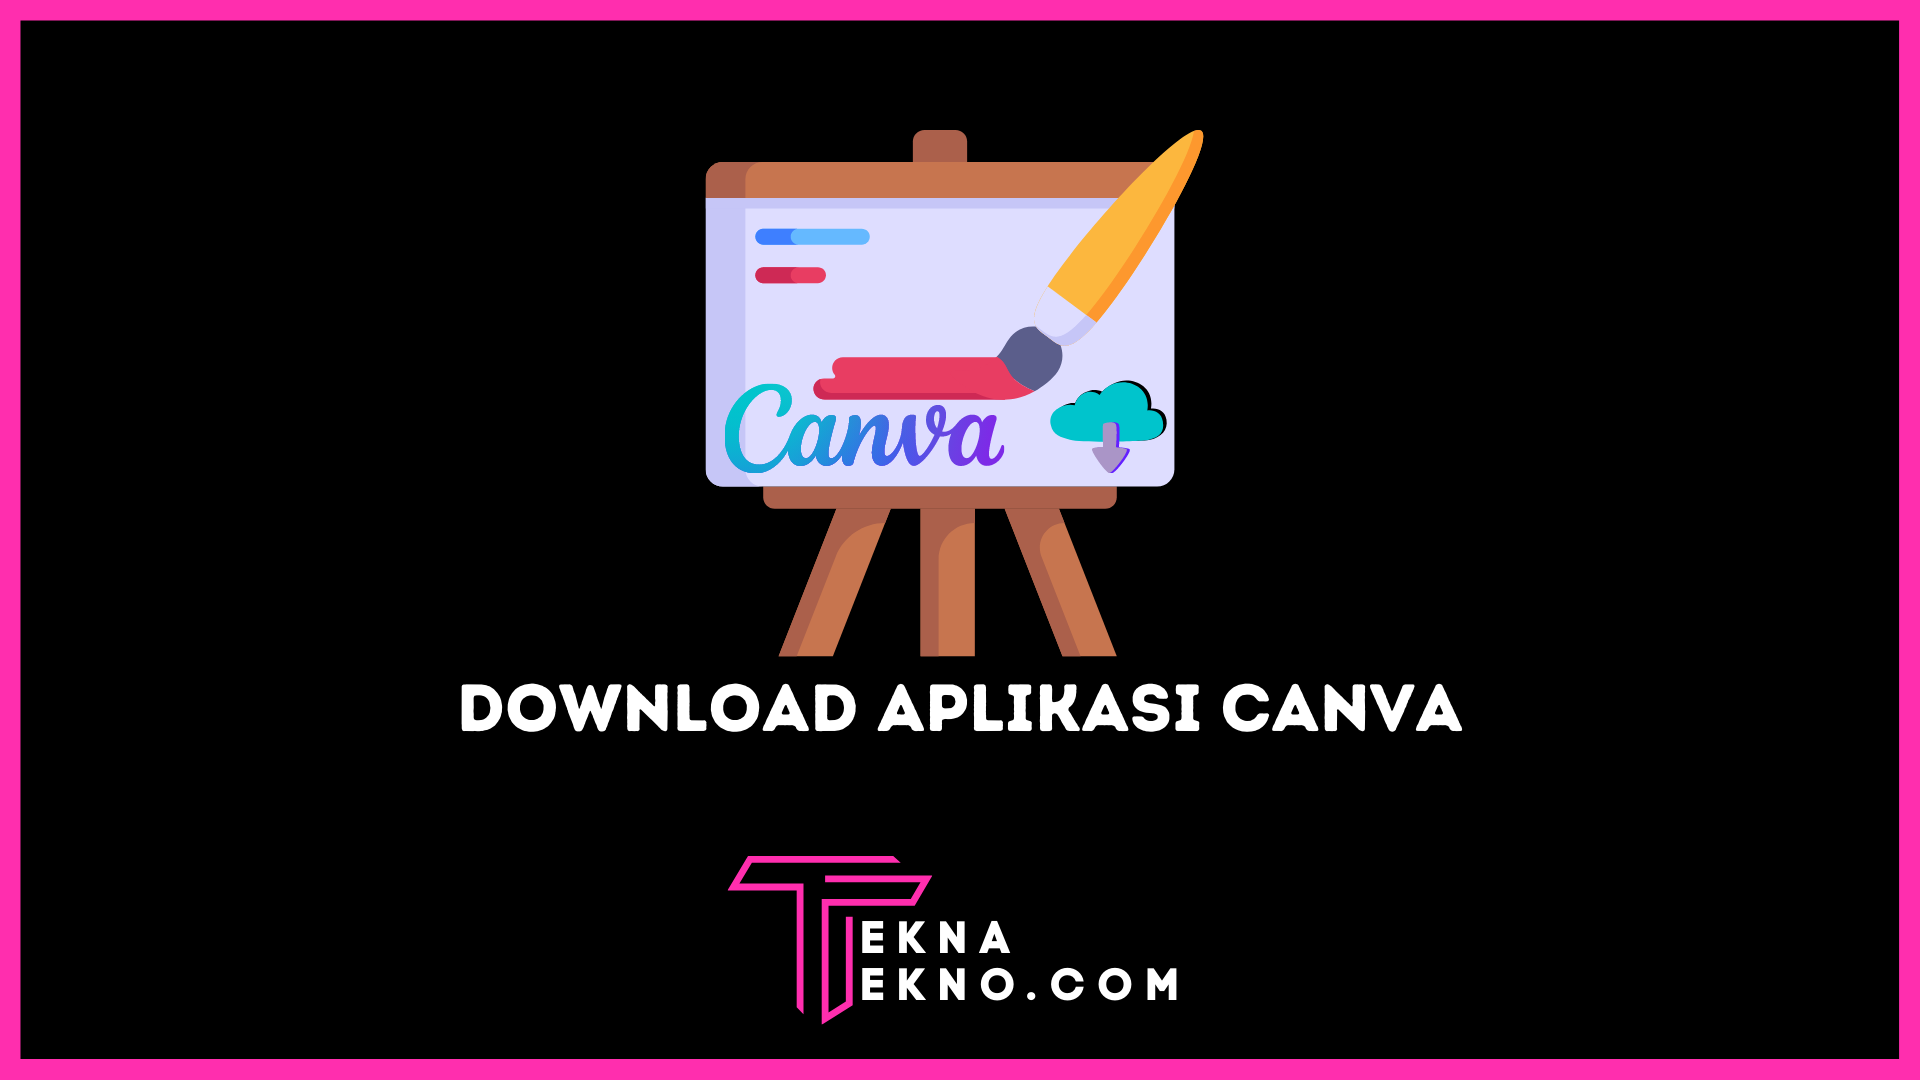 Download Aplikasi Canva untuk Windows, Mac, Android dan iOS